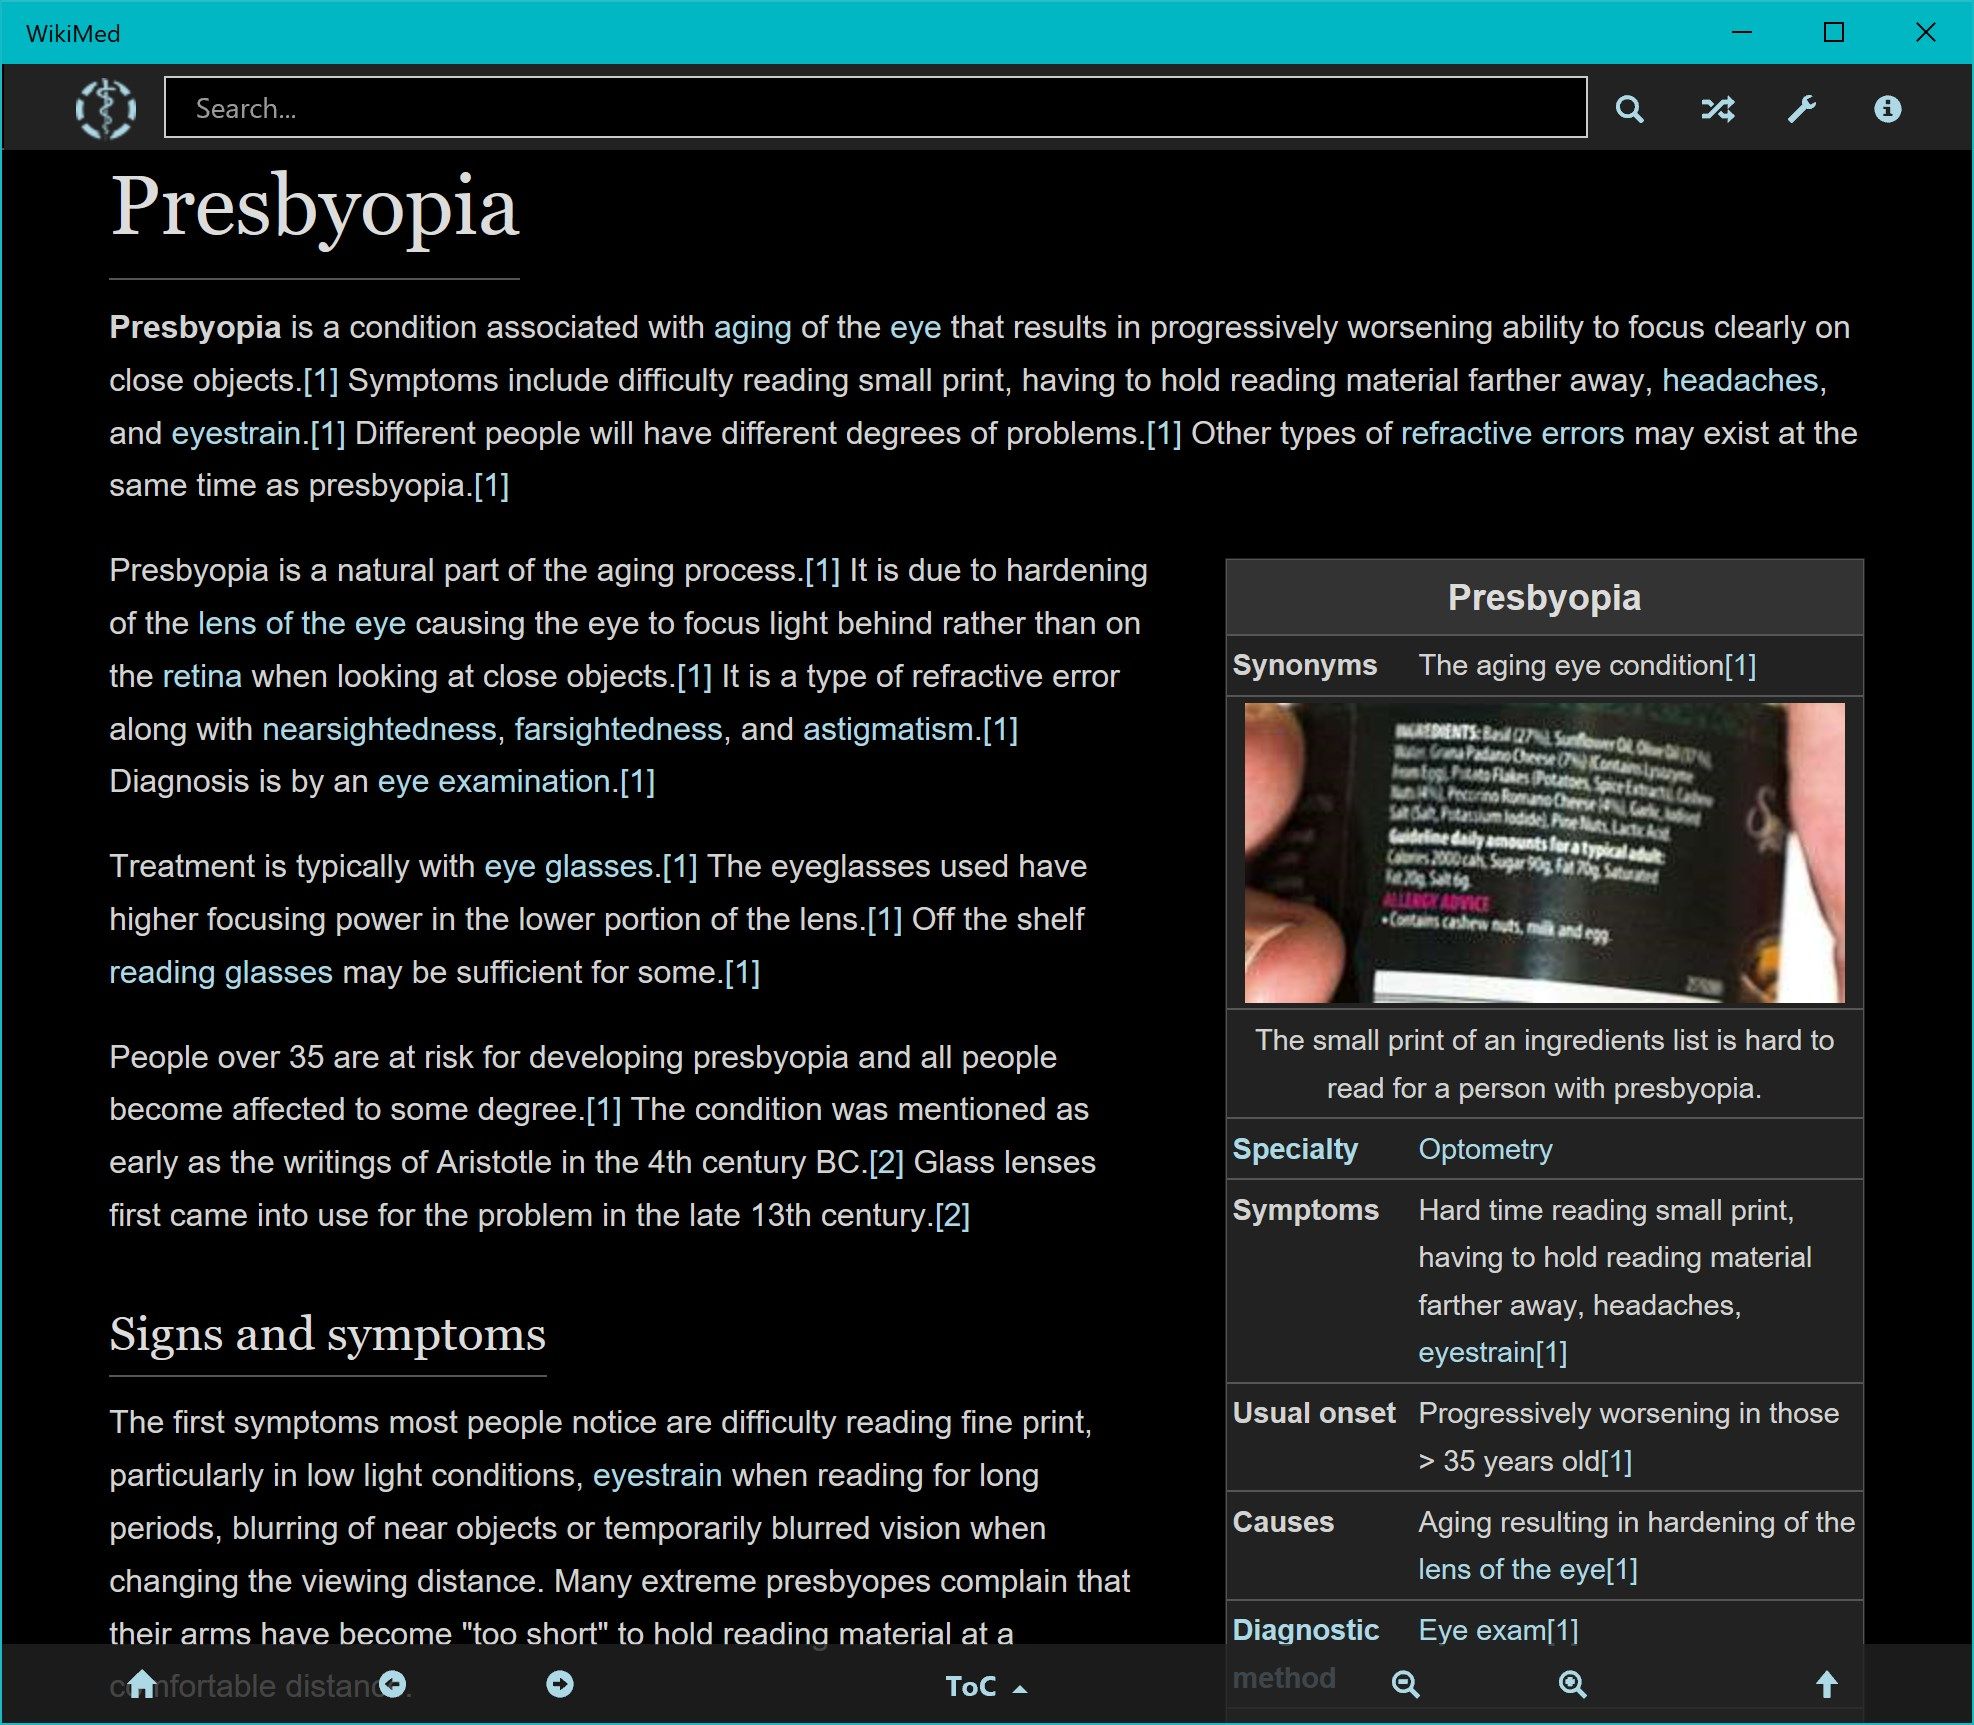 WikiMed Presbyopia (dark theme)